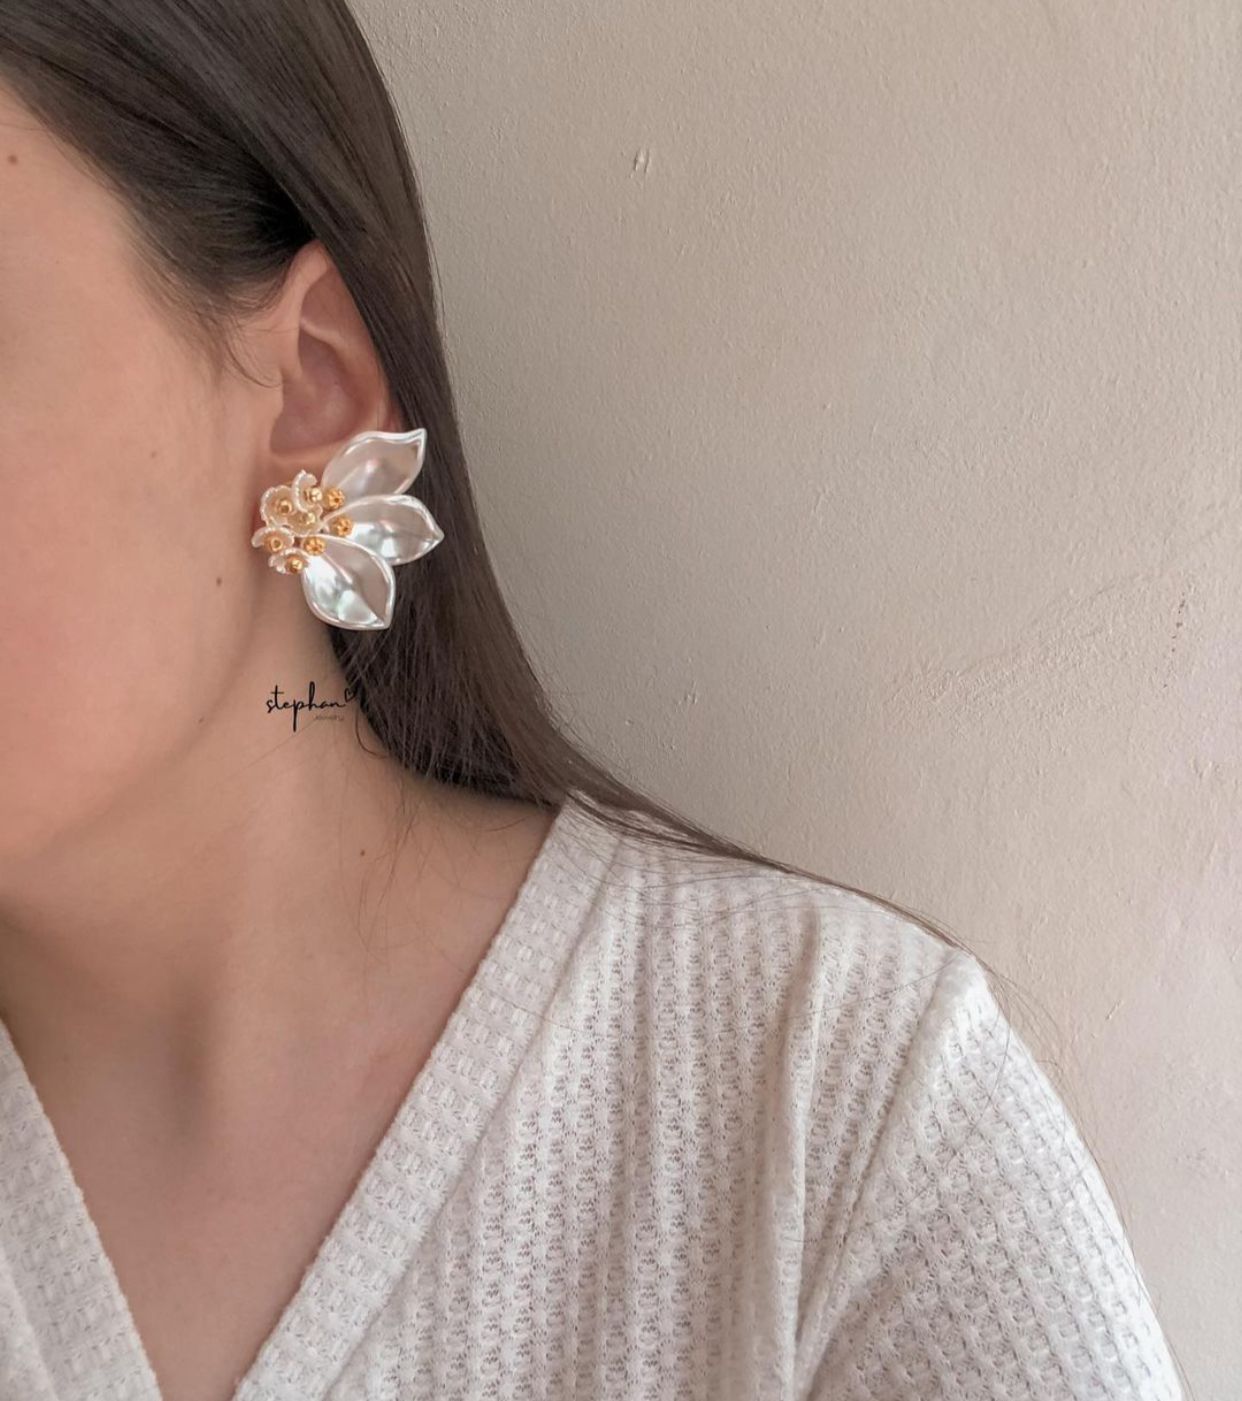 Florecitas earrings